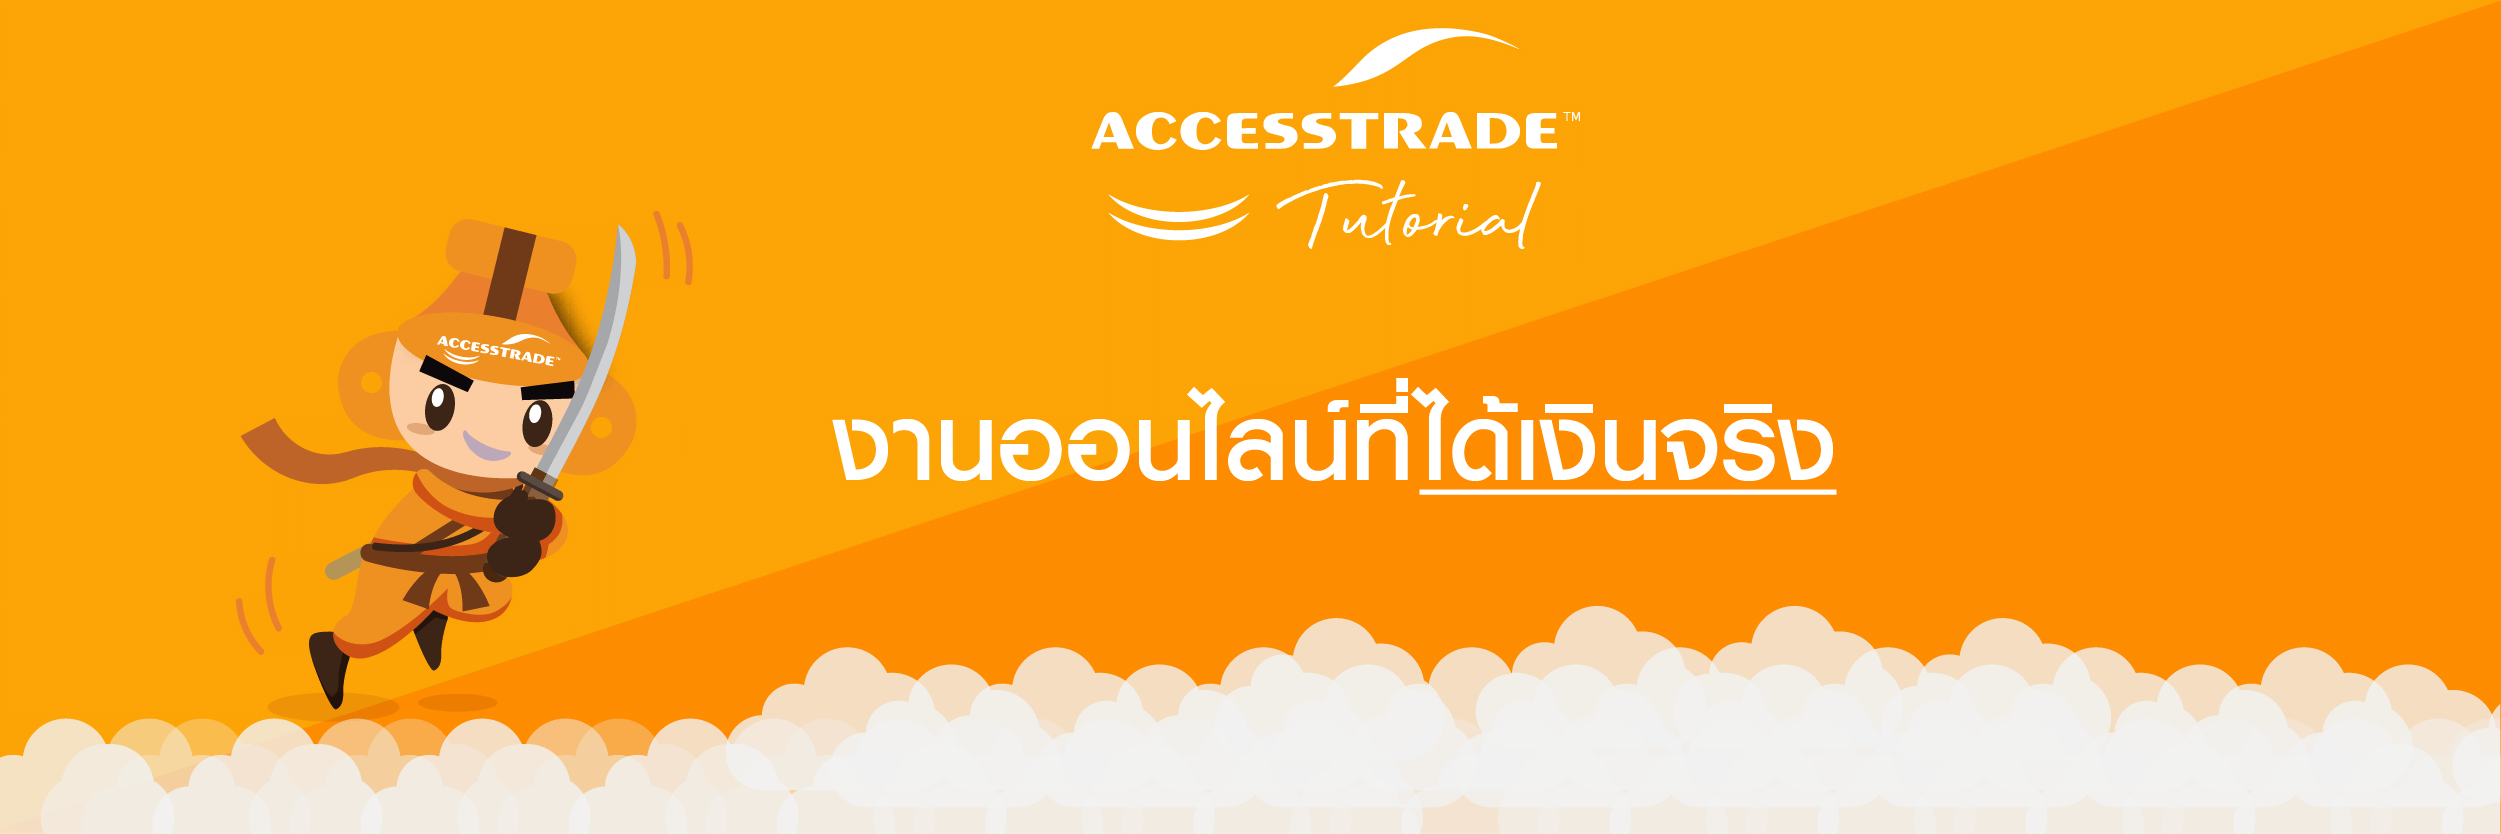 งานออนไลน์ ที่ได้เงิน จริง - Accesstrade Th